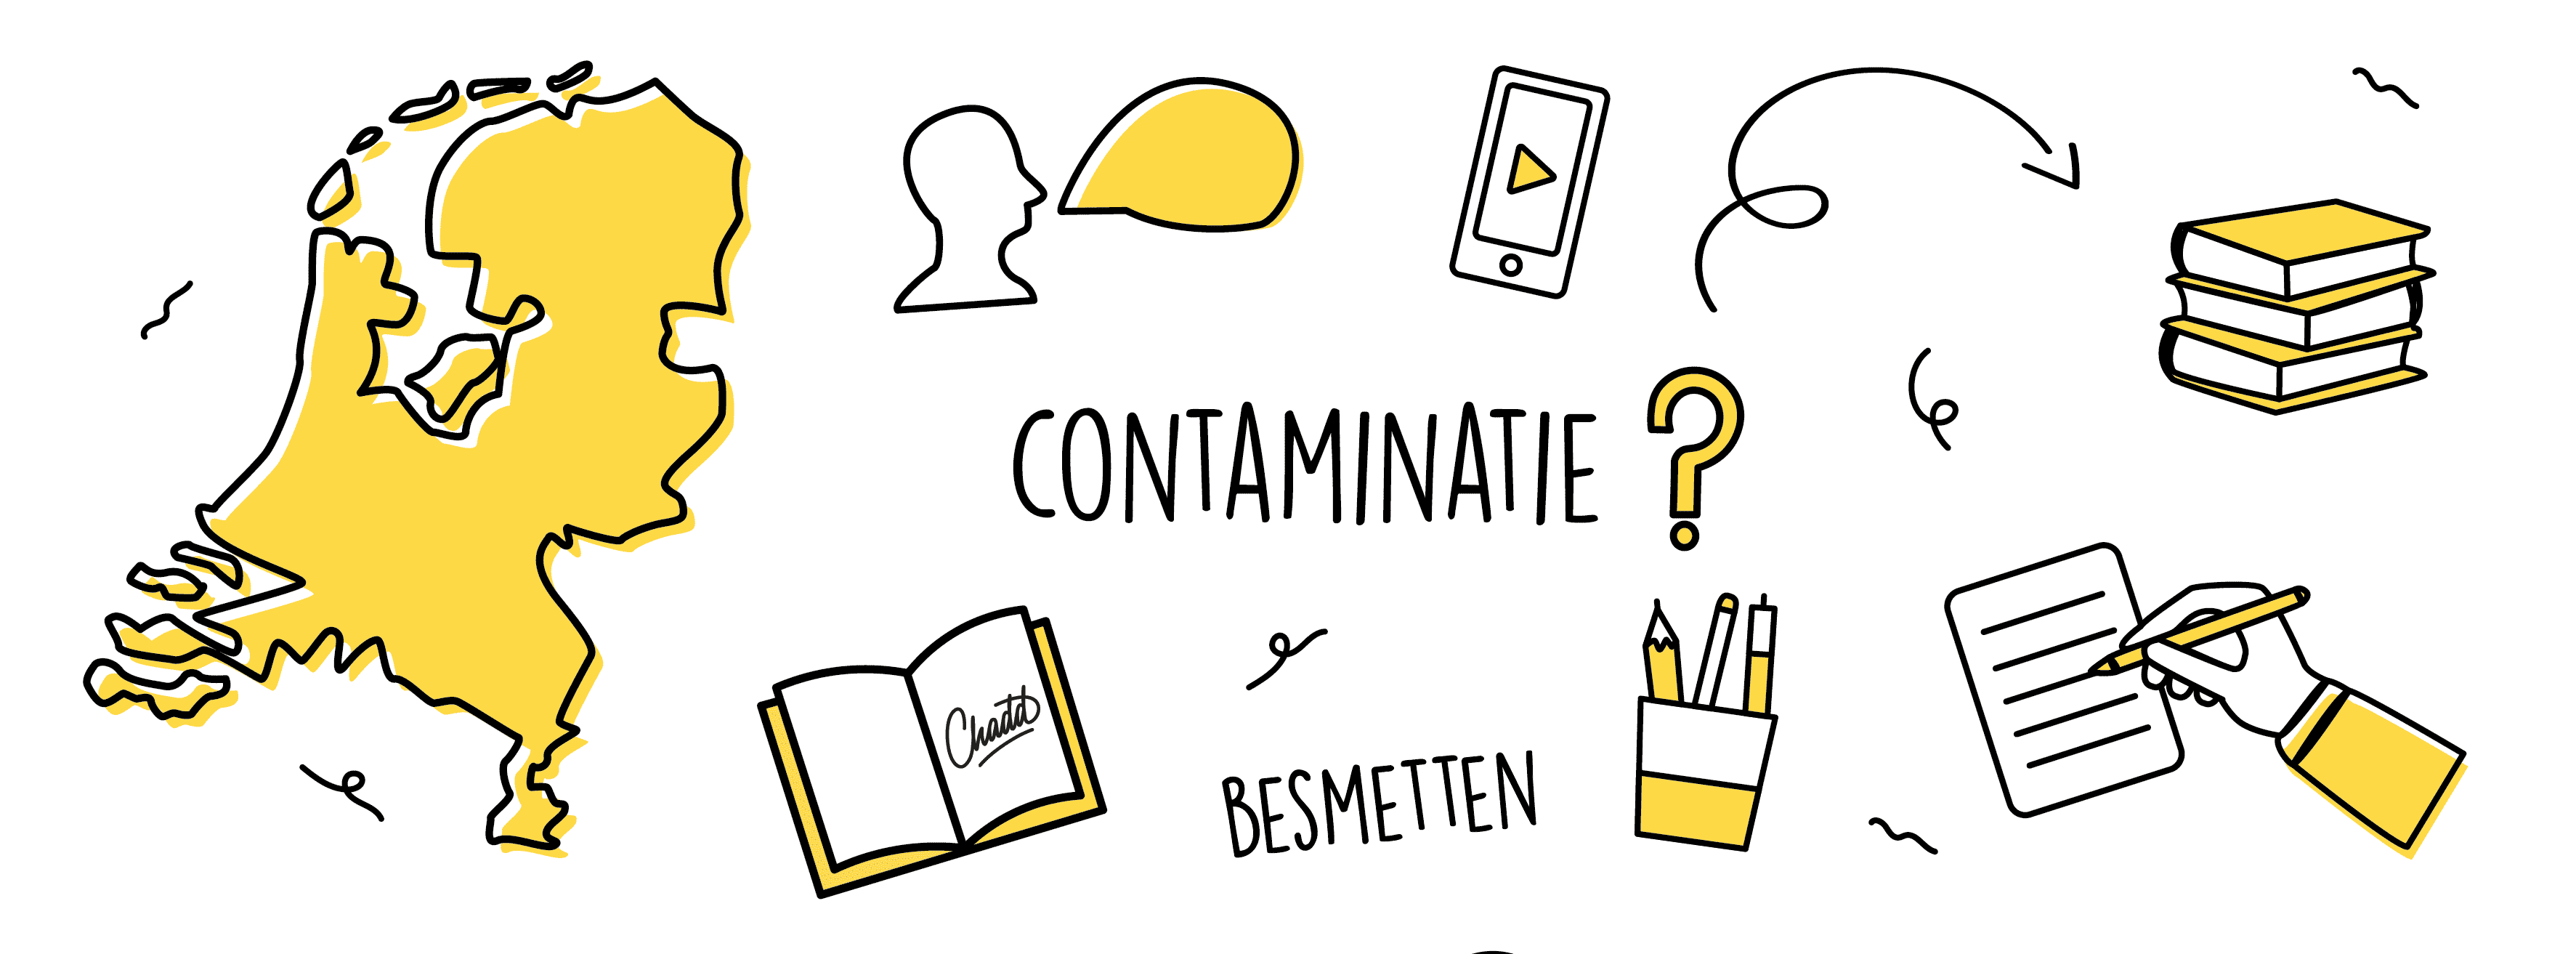 Contaminatie